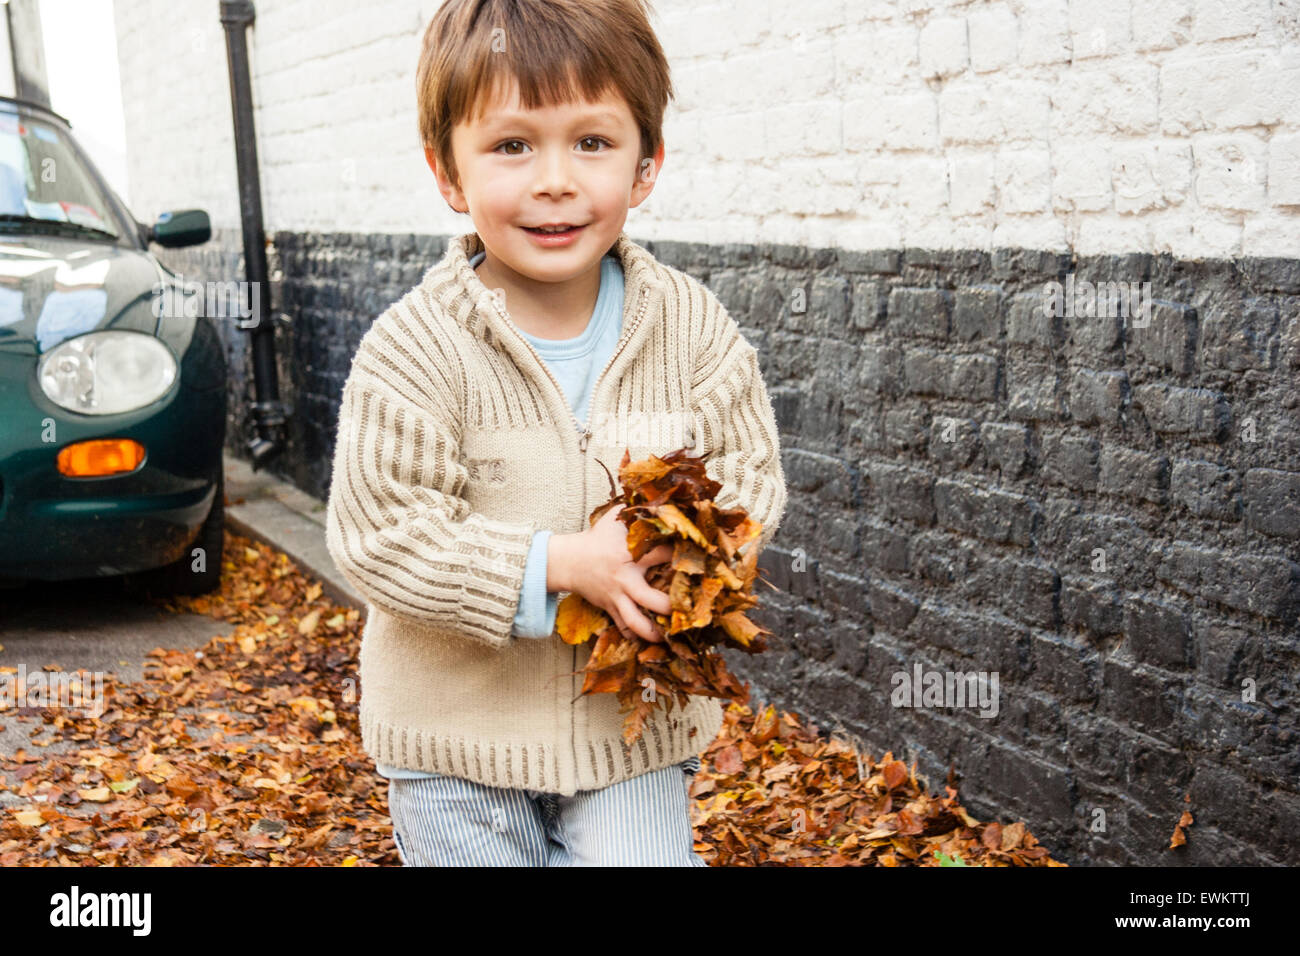 Caucasien enfant, garçon, 5-6 ans, marche towrads viewer sur une rue arborée en transportant un gros tas de feuilles d'automne brun dans ses mains. Des sourires. Banque D'Images